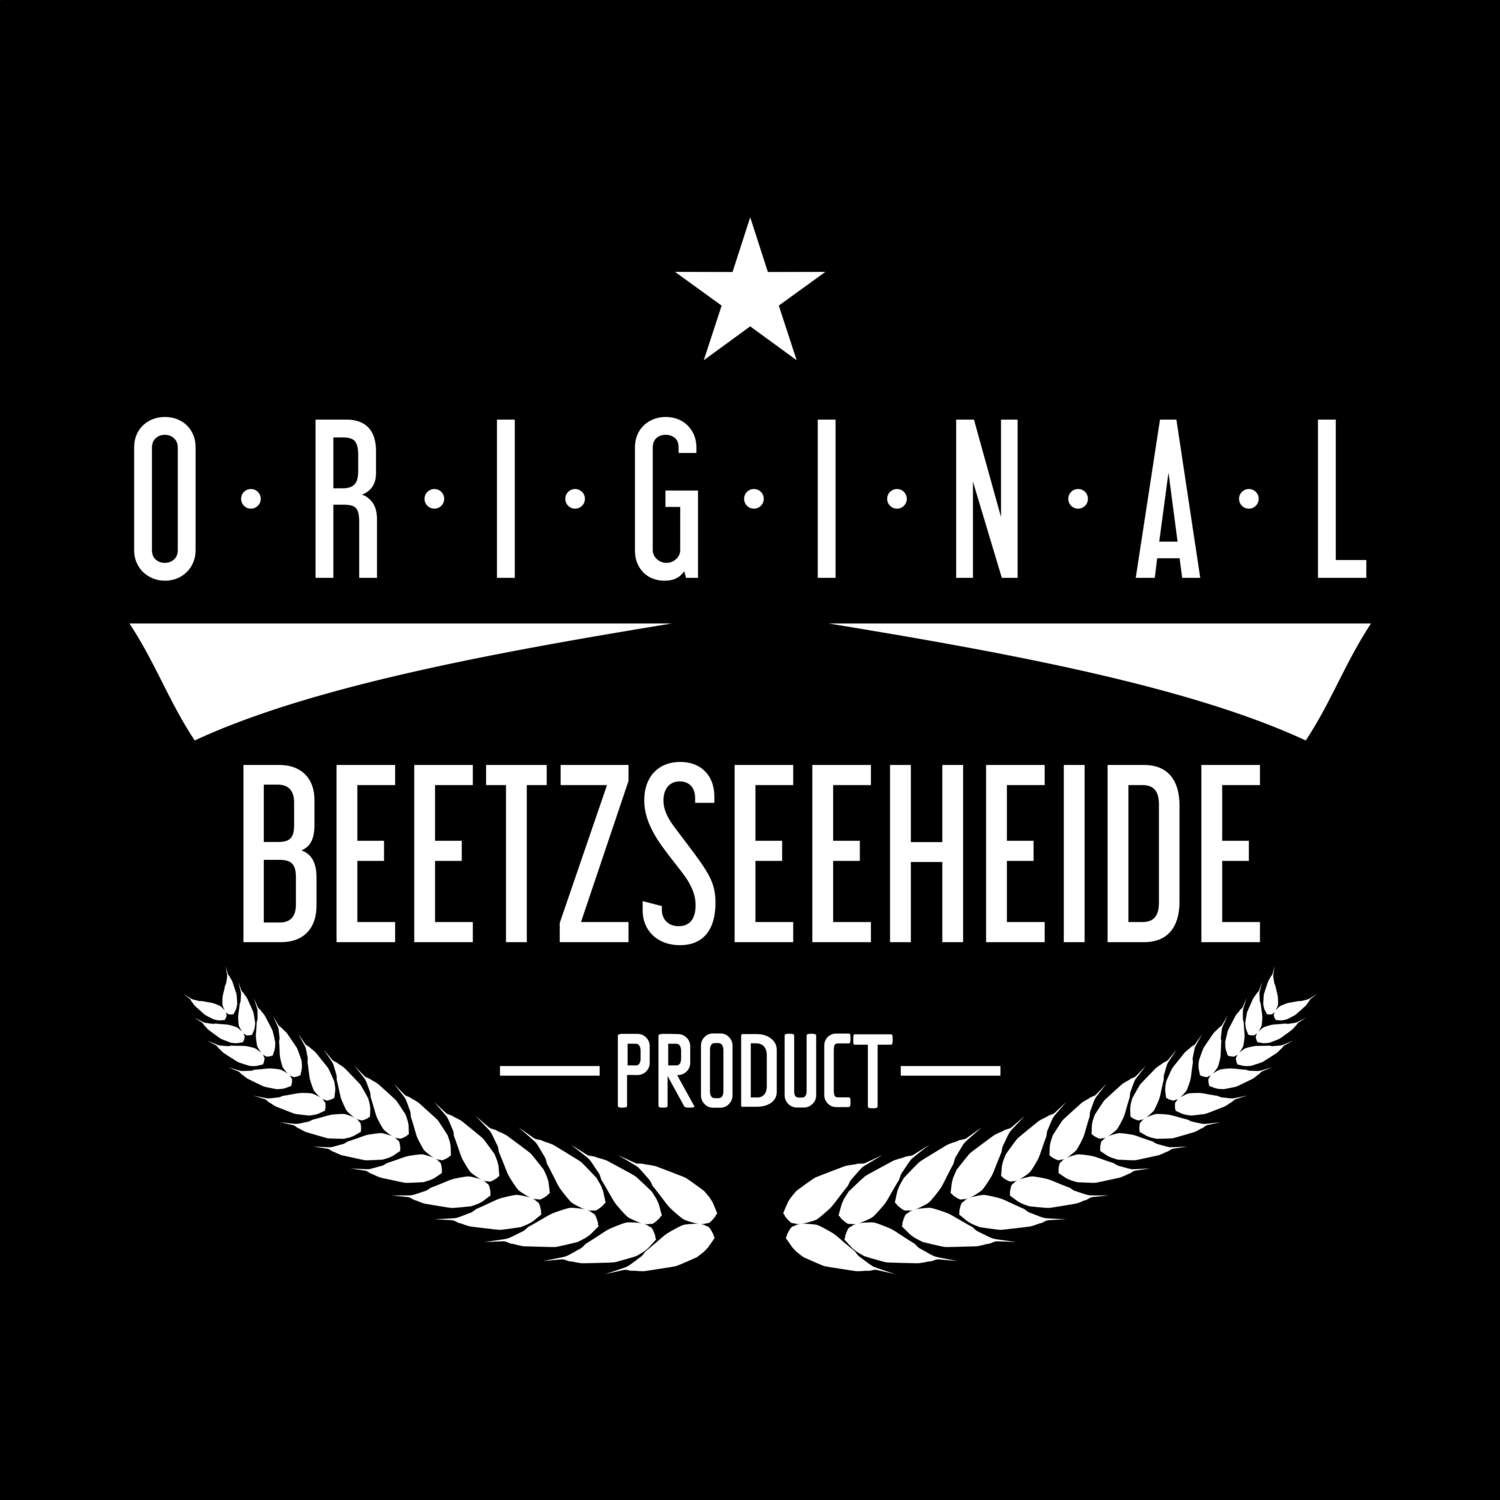 Beetzseeheide T-Shirt »Original Product«